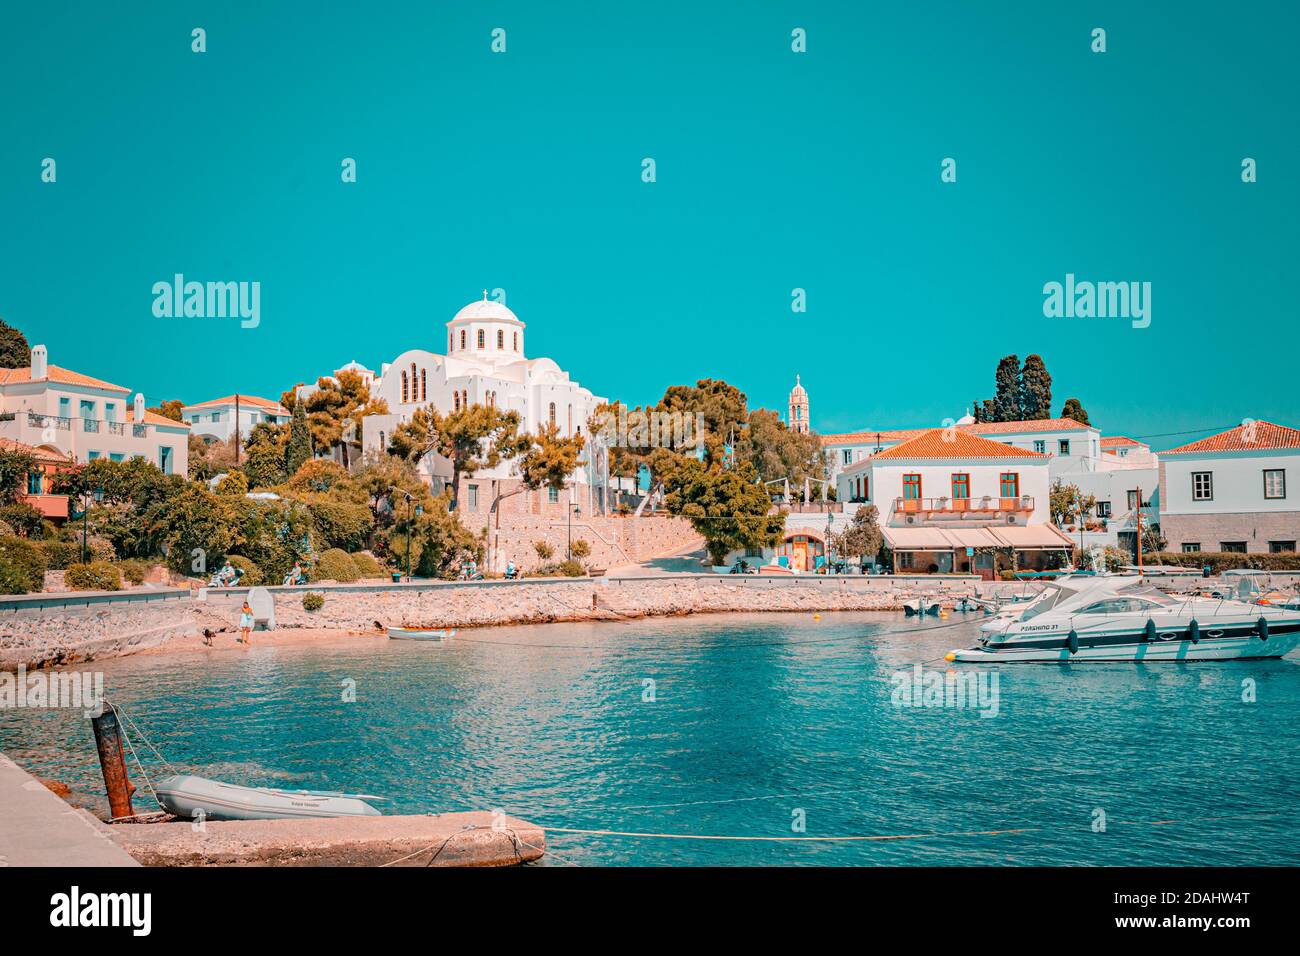 Bellissimo paesaggio con un'antica chiesa al cimitero vicino al mare, Grecia Foto Stock